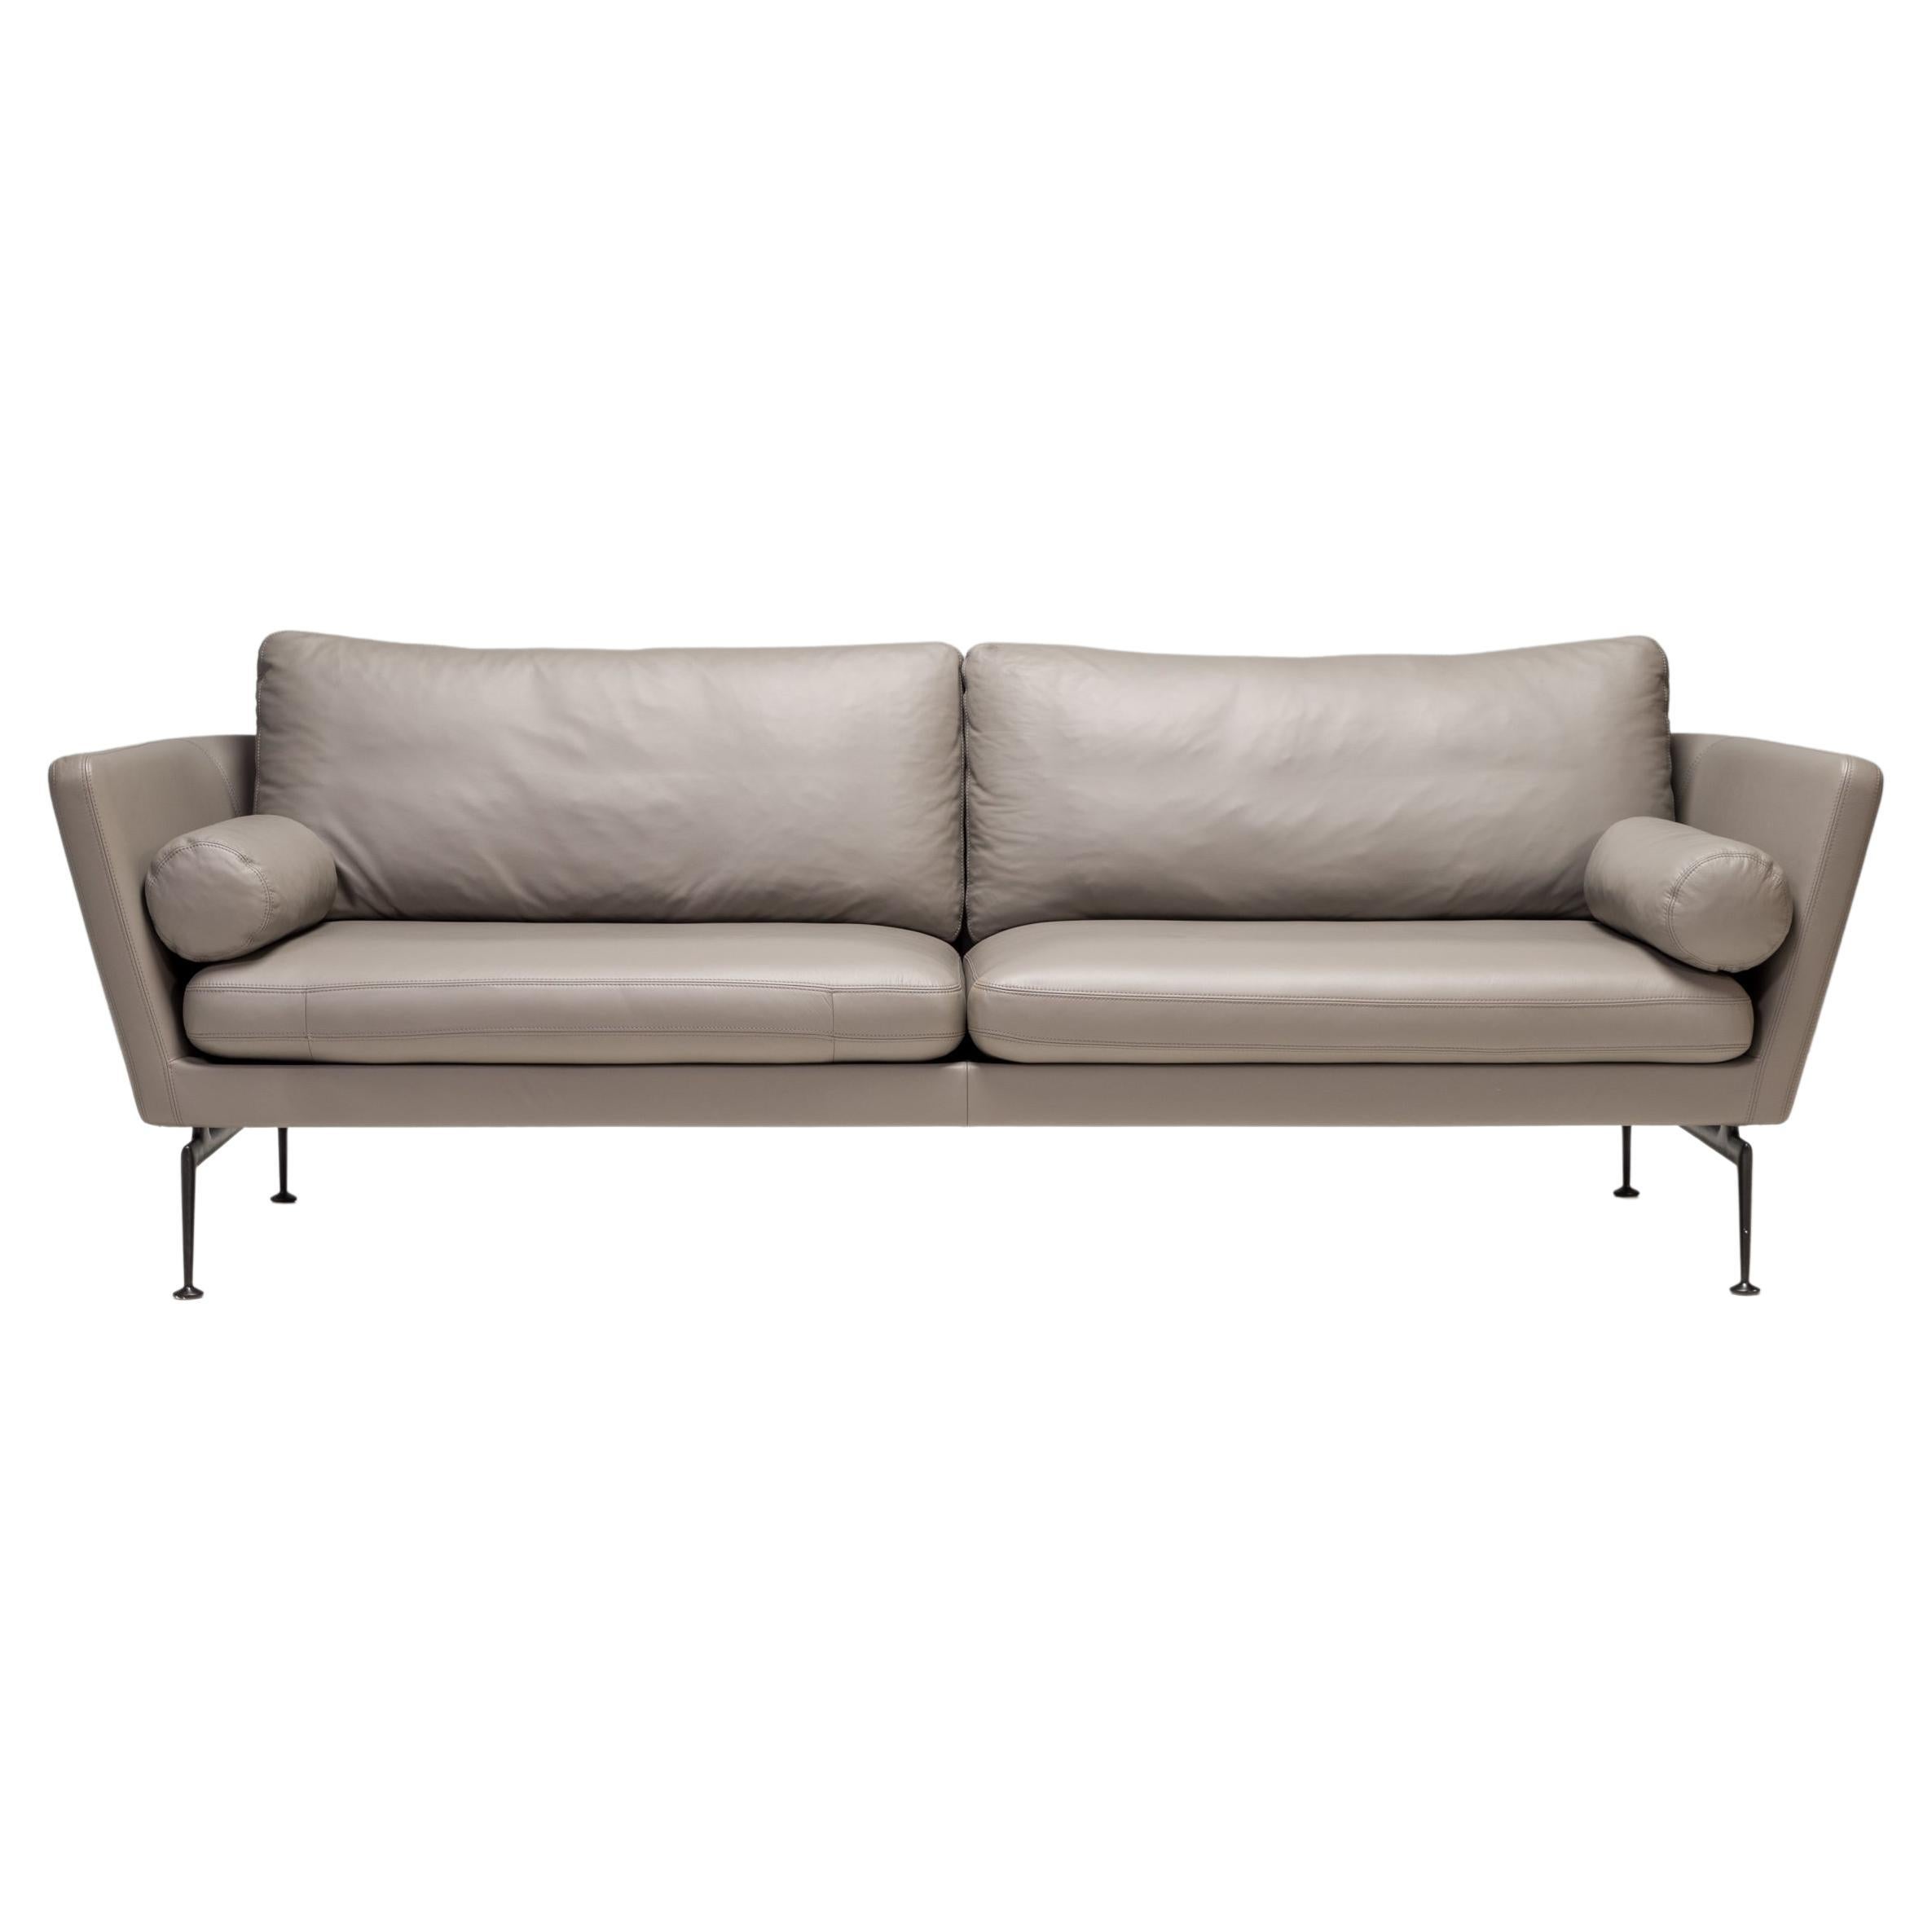 Antonio Citterio für Vitra, dreisitziges Suita-Sofa aus grauem Leder, 2021